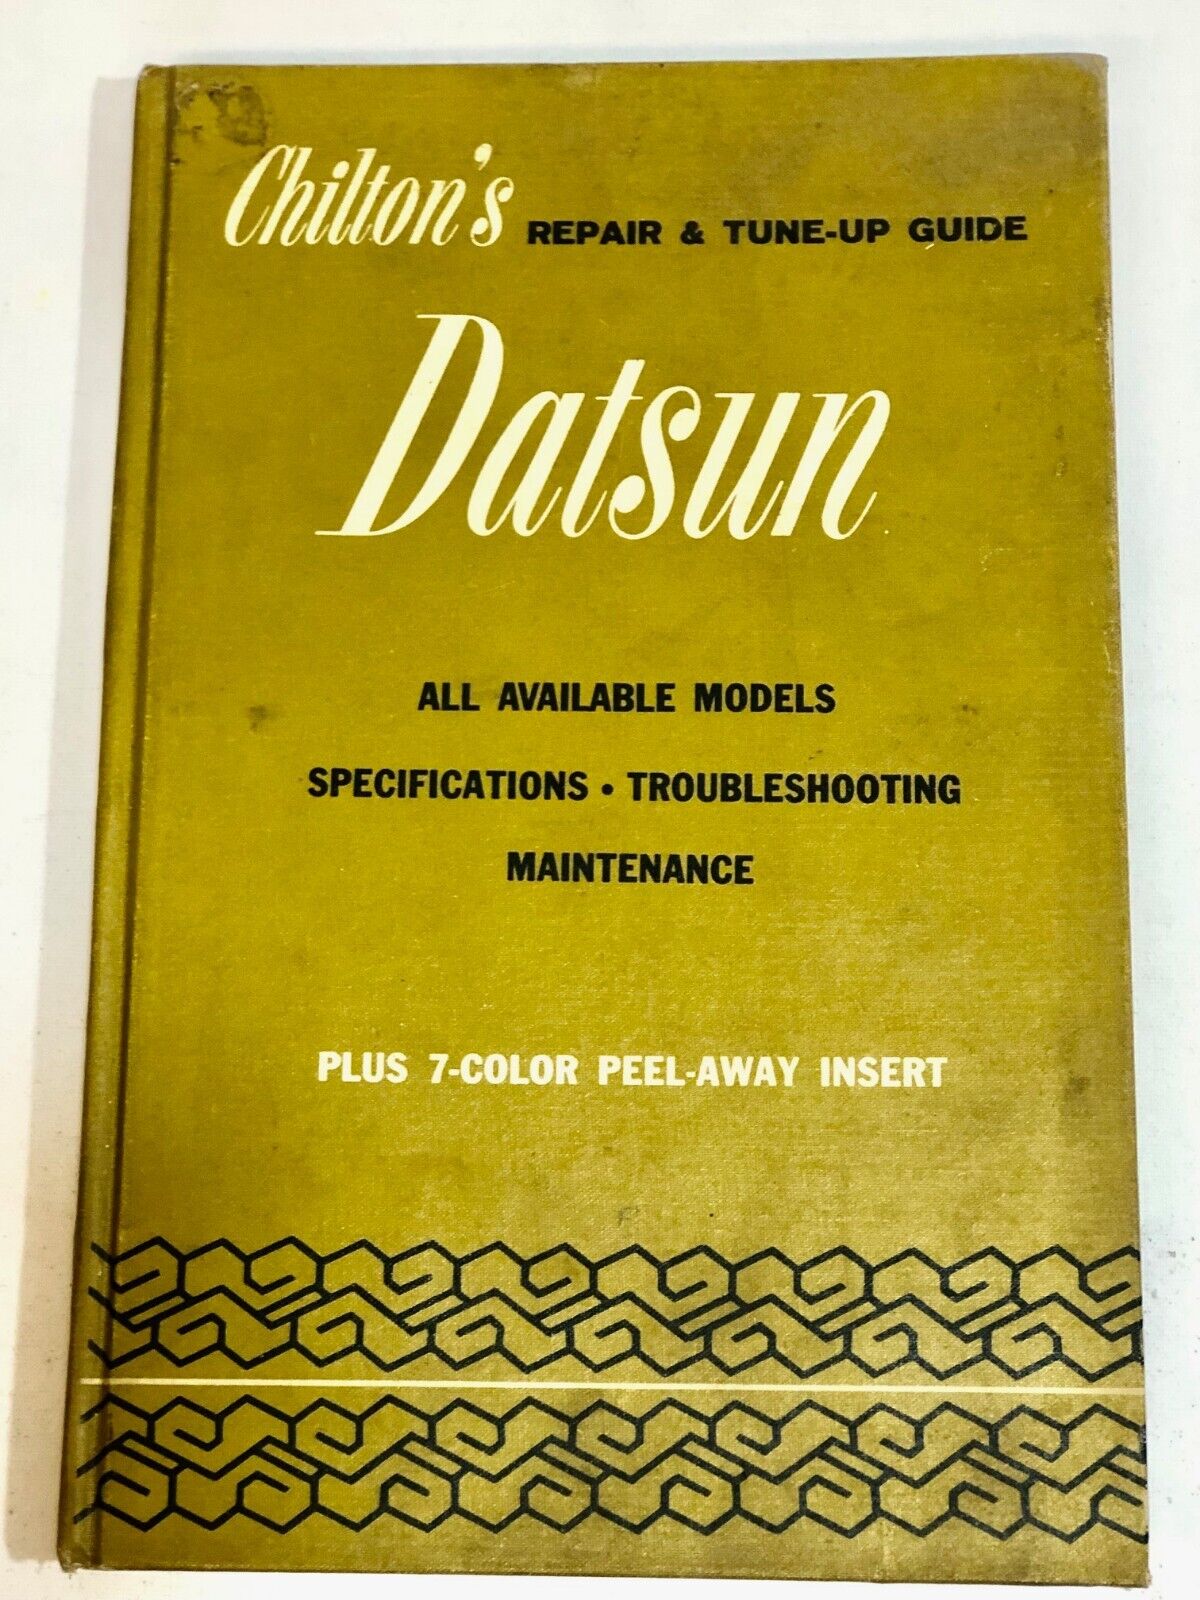 Chilton\'s Repair & Tune-up Guide for DATSUN 1968-1972